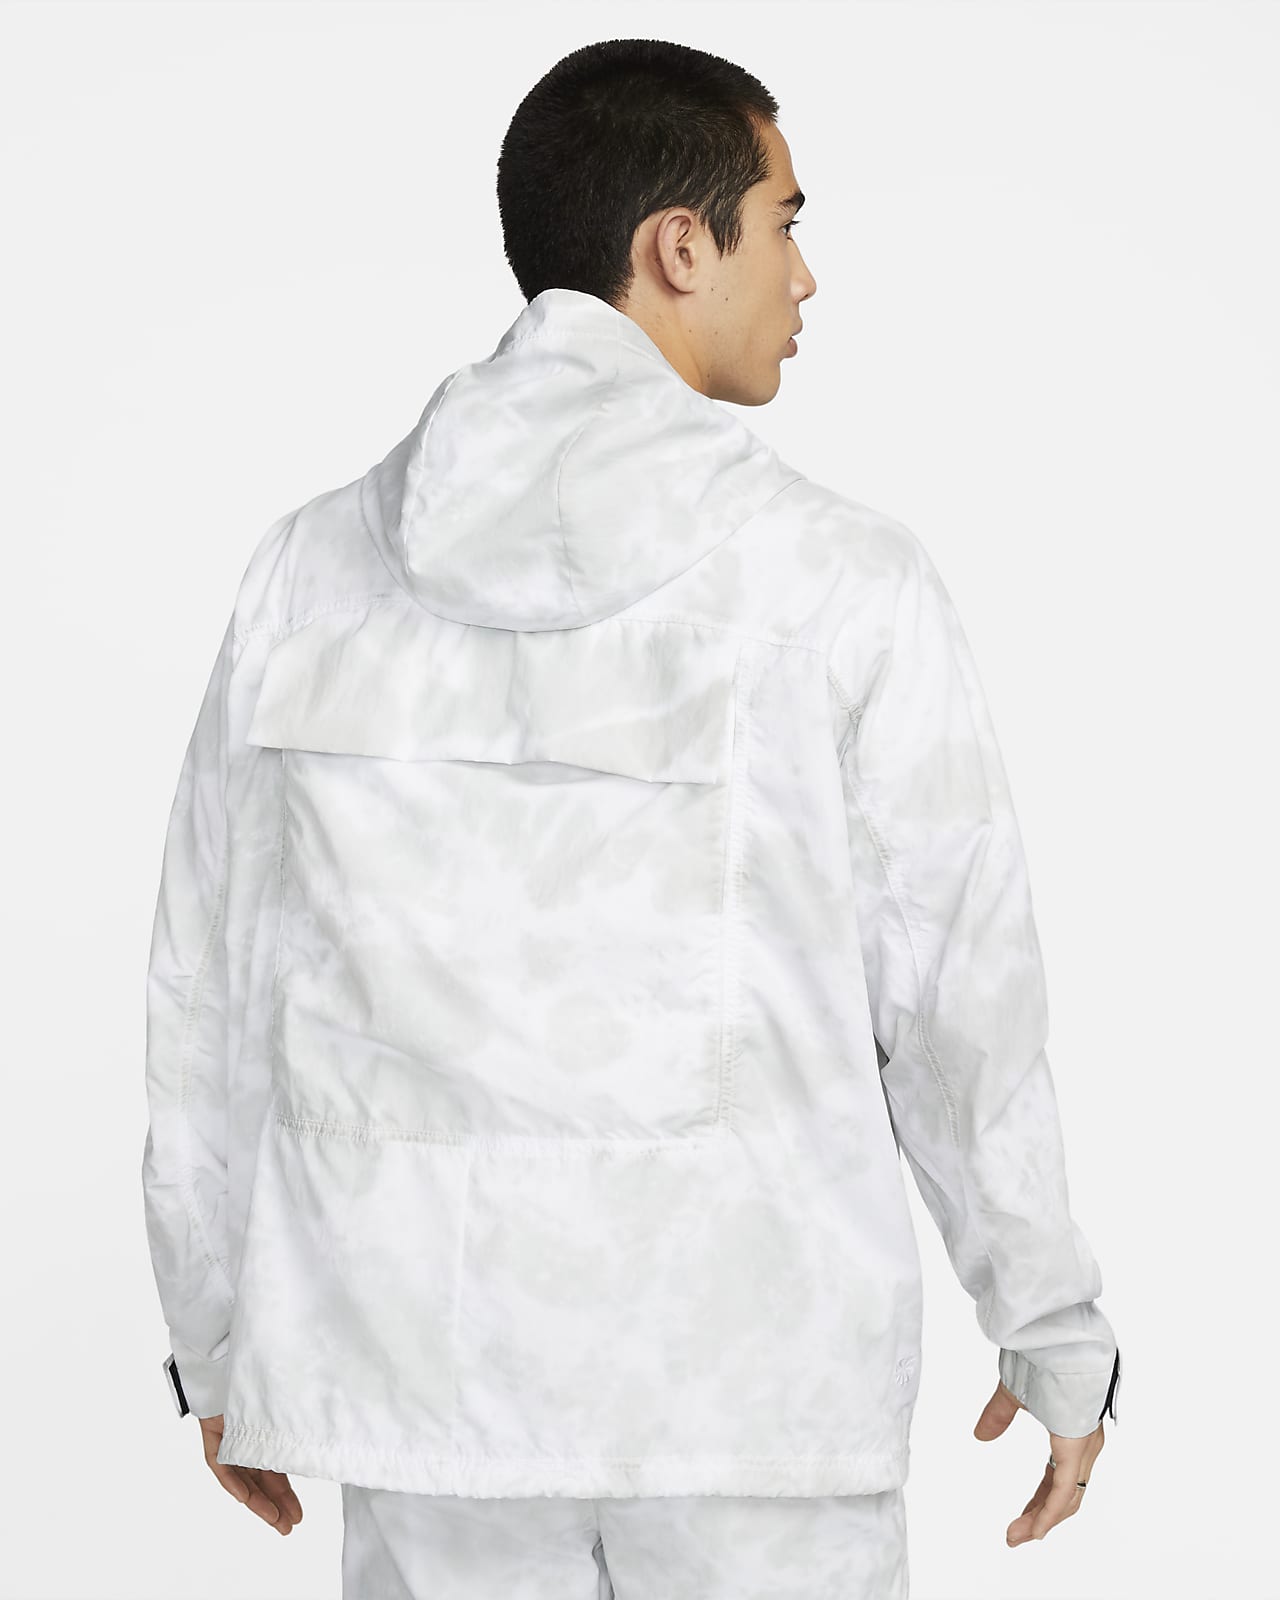 Nike Sportswear Tech Pack Men's Woven Hooded Jacket. Nike.com